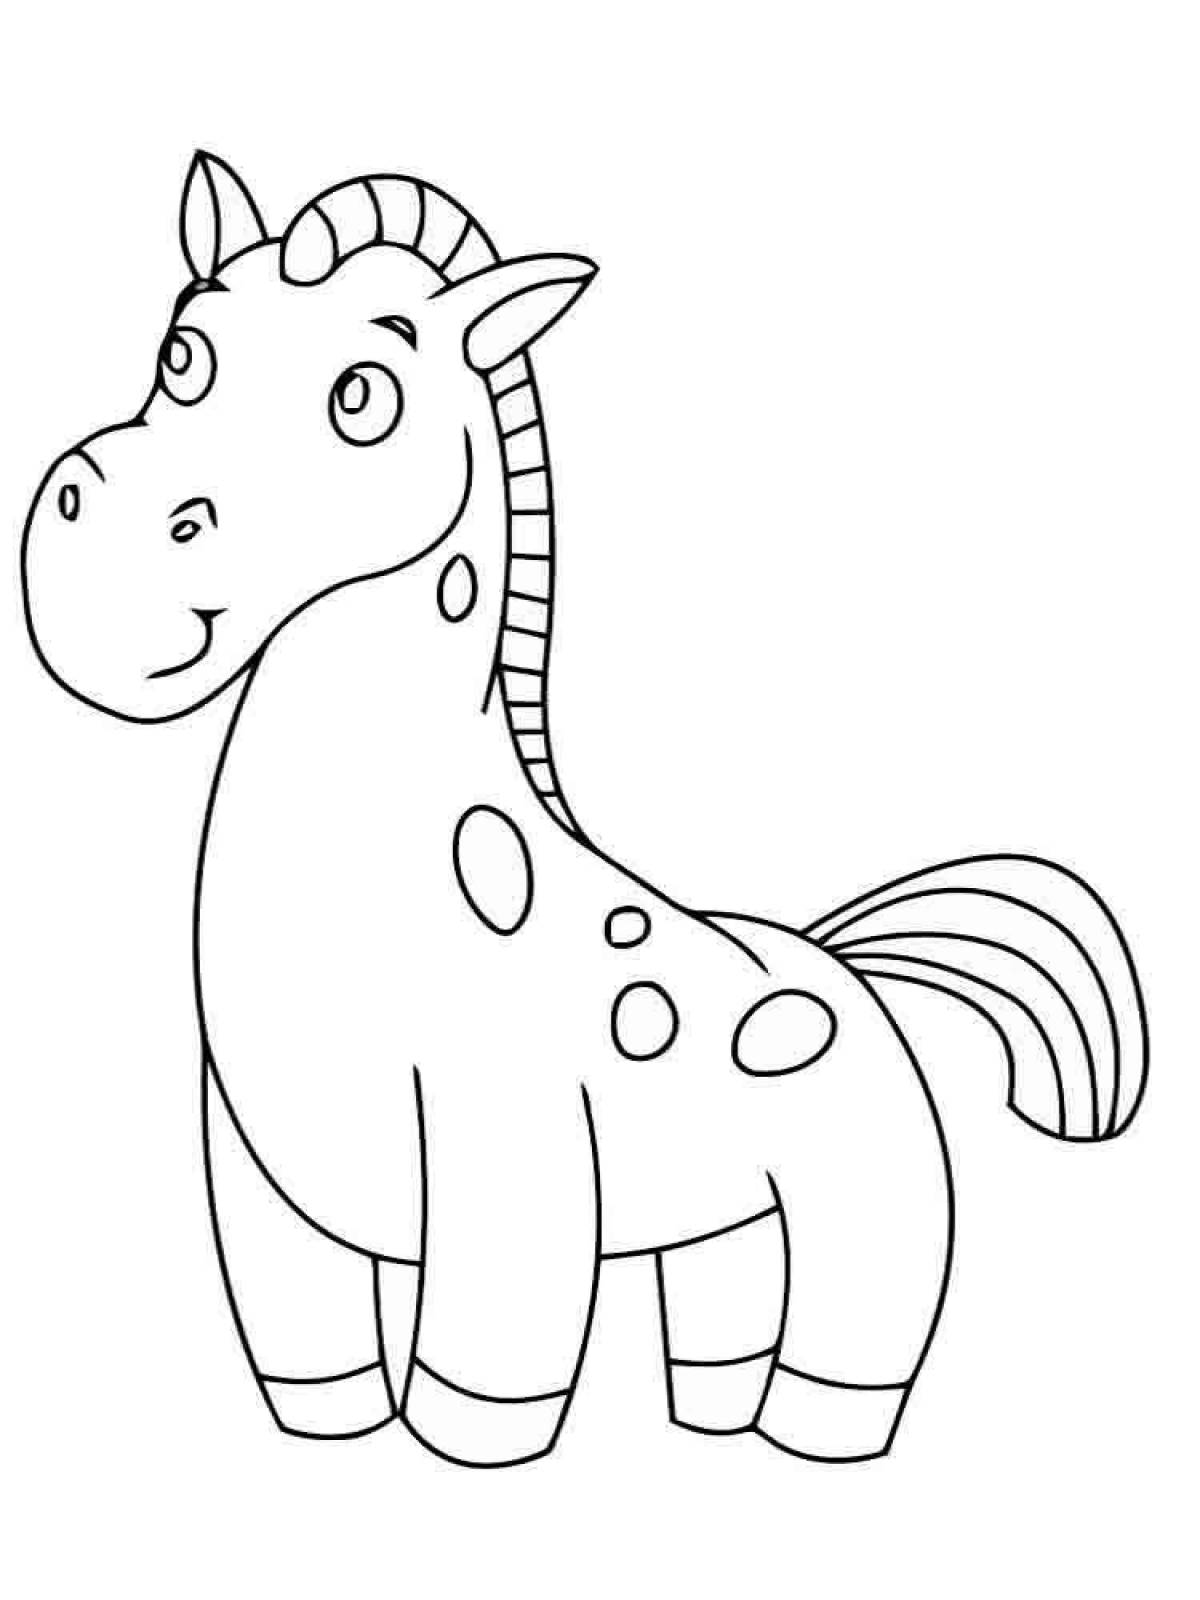 Лошадка для 6 лет. Раскраска. Лошадка. Лошадка раскраска для малышей. Лошадь раскраска для детей. Раскраска детская лошадка.